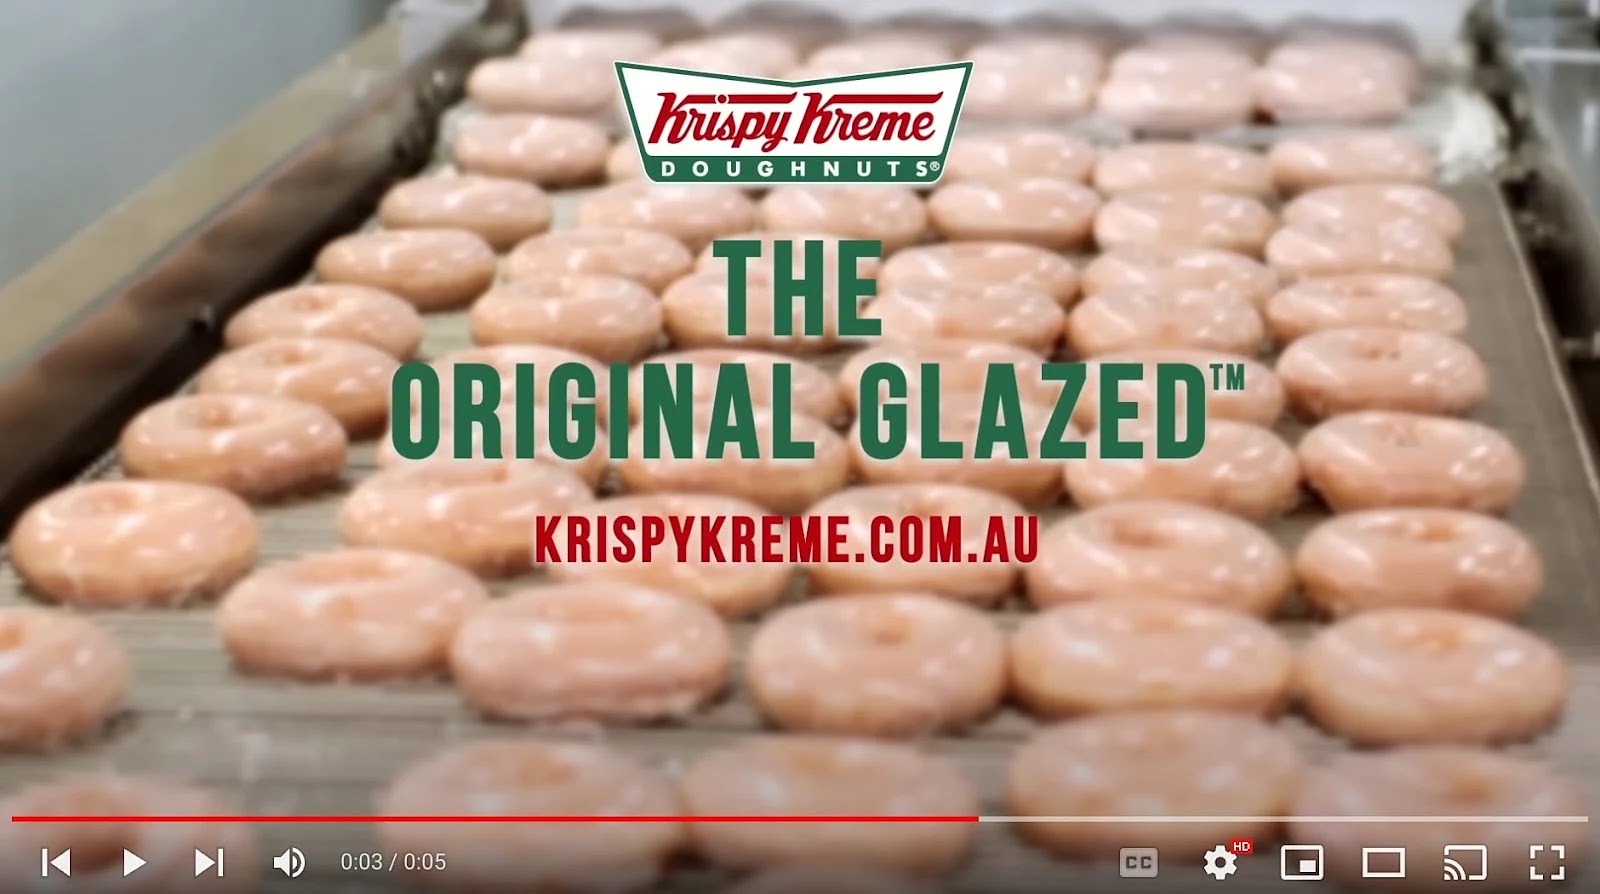 A bumper ad by Krispy Kreme